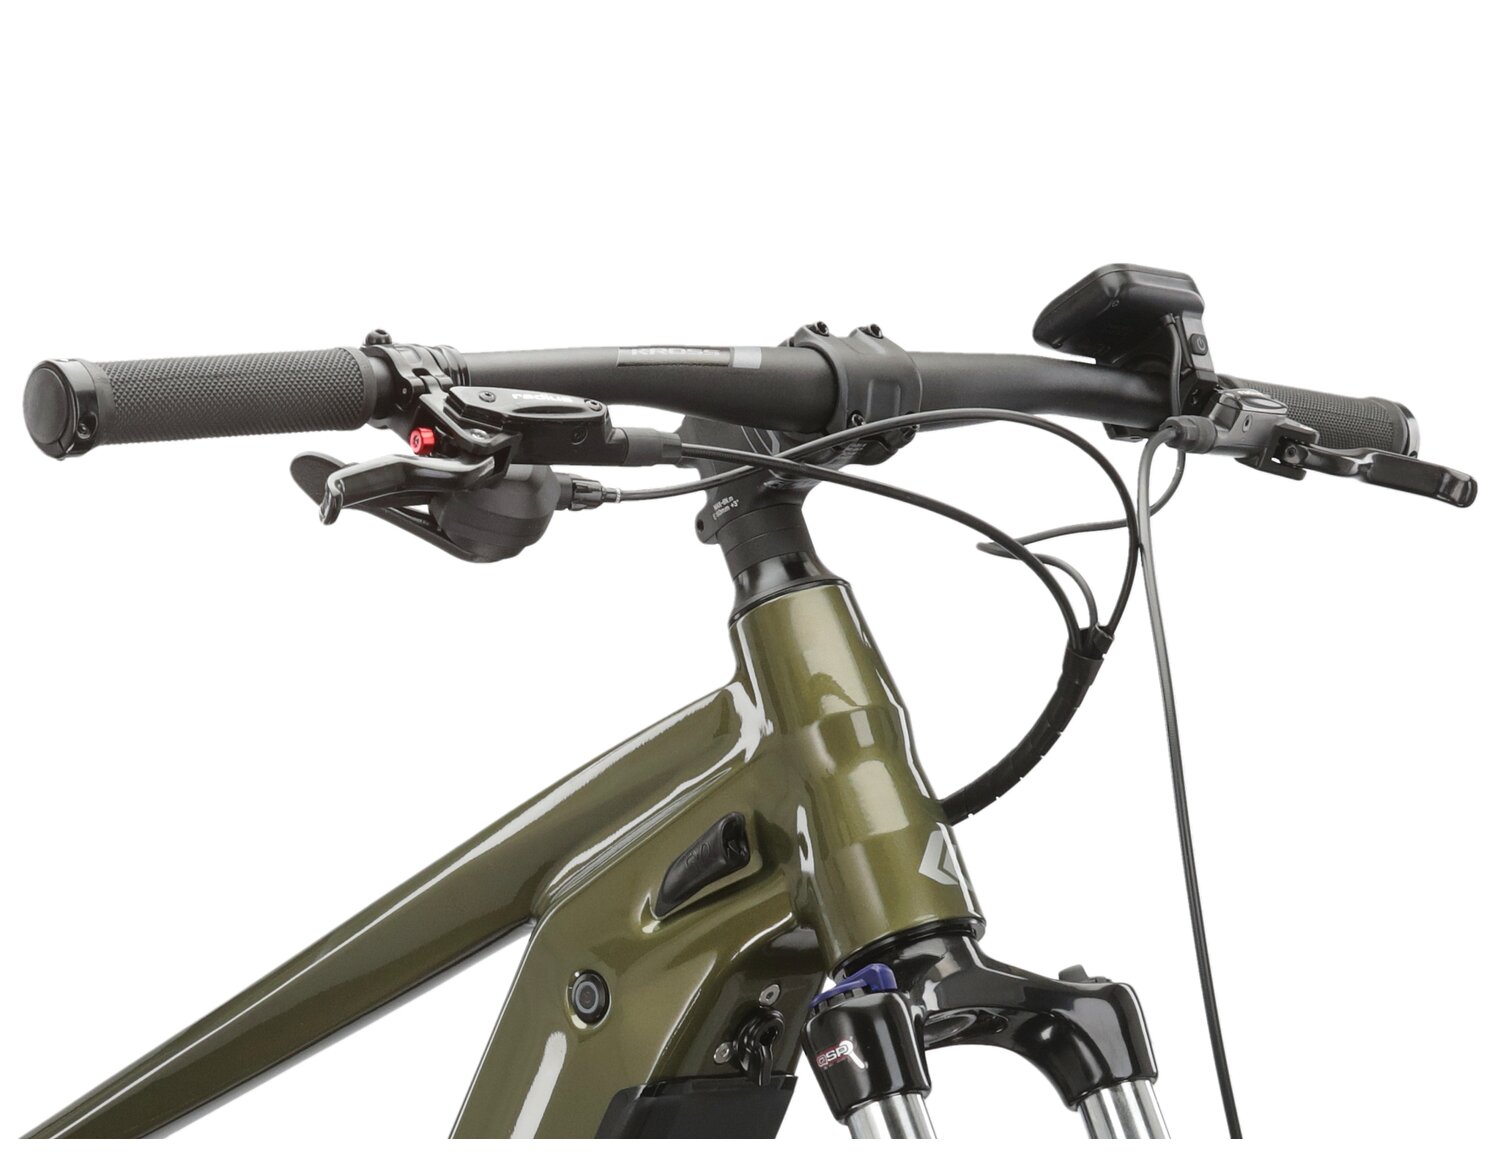  Aluminowa rama, amortyzowany widelec SR Suntour XCM ATB HLO o skoku 100mm oraz opony w elektrycznym rowerze górskim Ebike MTB KROSS Hexagon Boost 4.0 756 Wh 